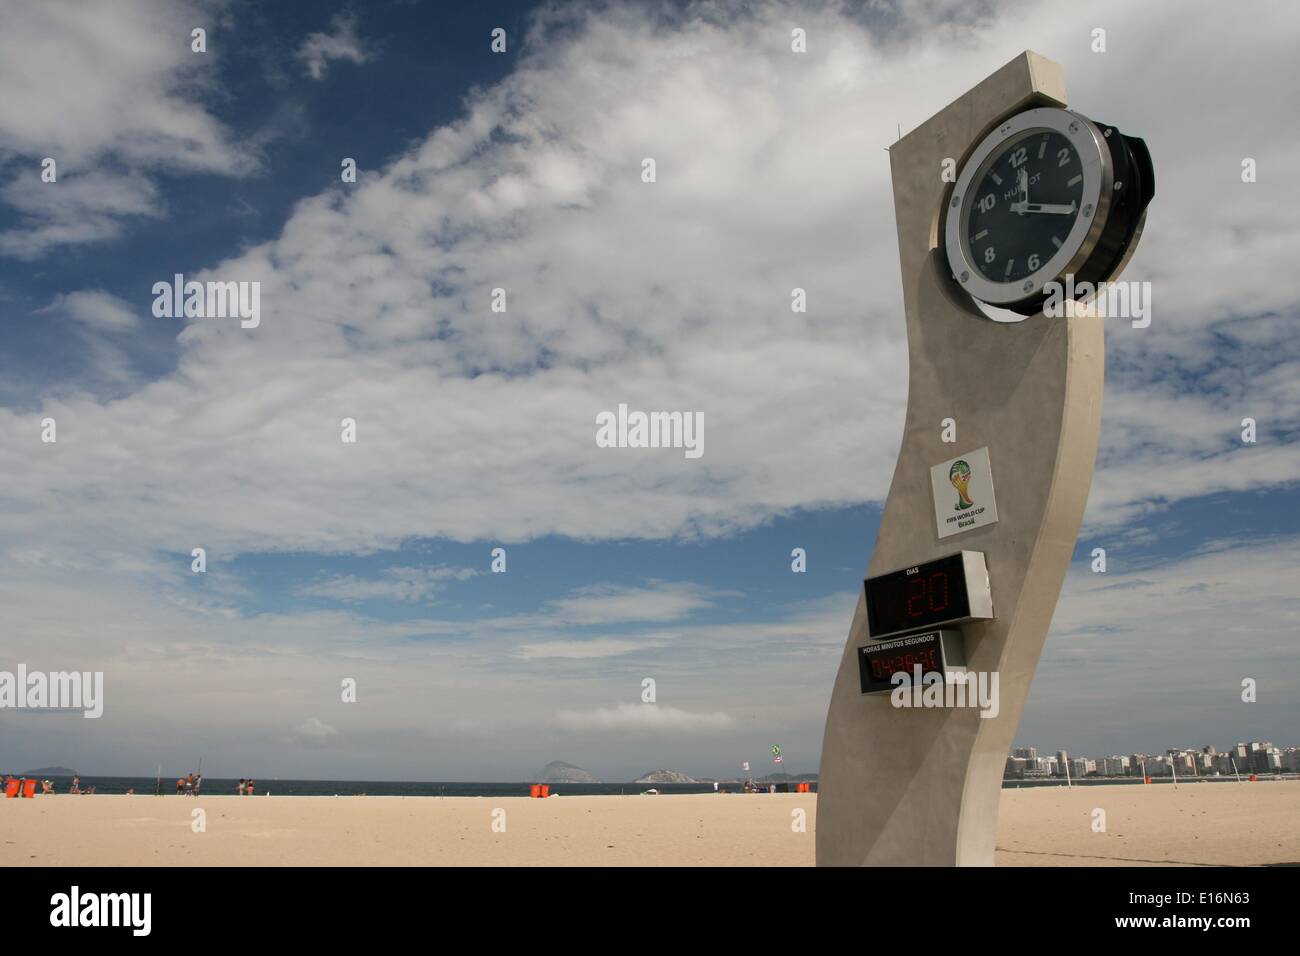 L'Hublot Horloge de compte à rebours, conçu à la fin de l'architecte Brésilien Oscar Niemeyer, indique 20 jours à l'ouverture de la Coupe du Monde de la FIFA, Brésil 2014. Rio de Janeiro, Brésil. 23 mai, 2014. Crédit : Maria Adelaide Silva/Alamy Live News Banque D'Images